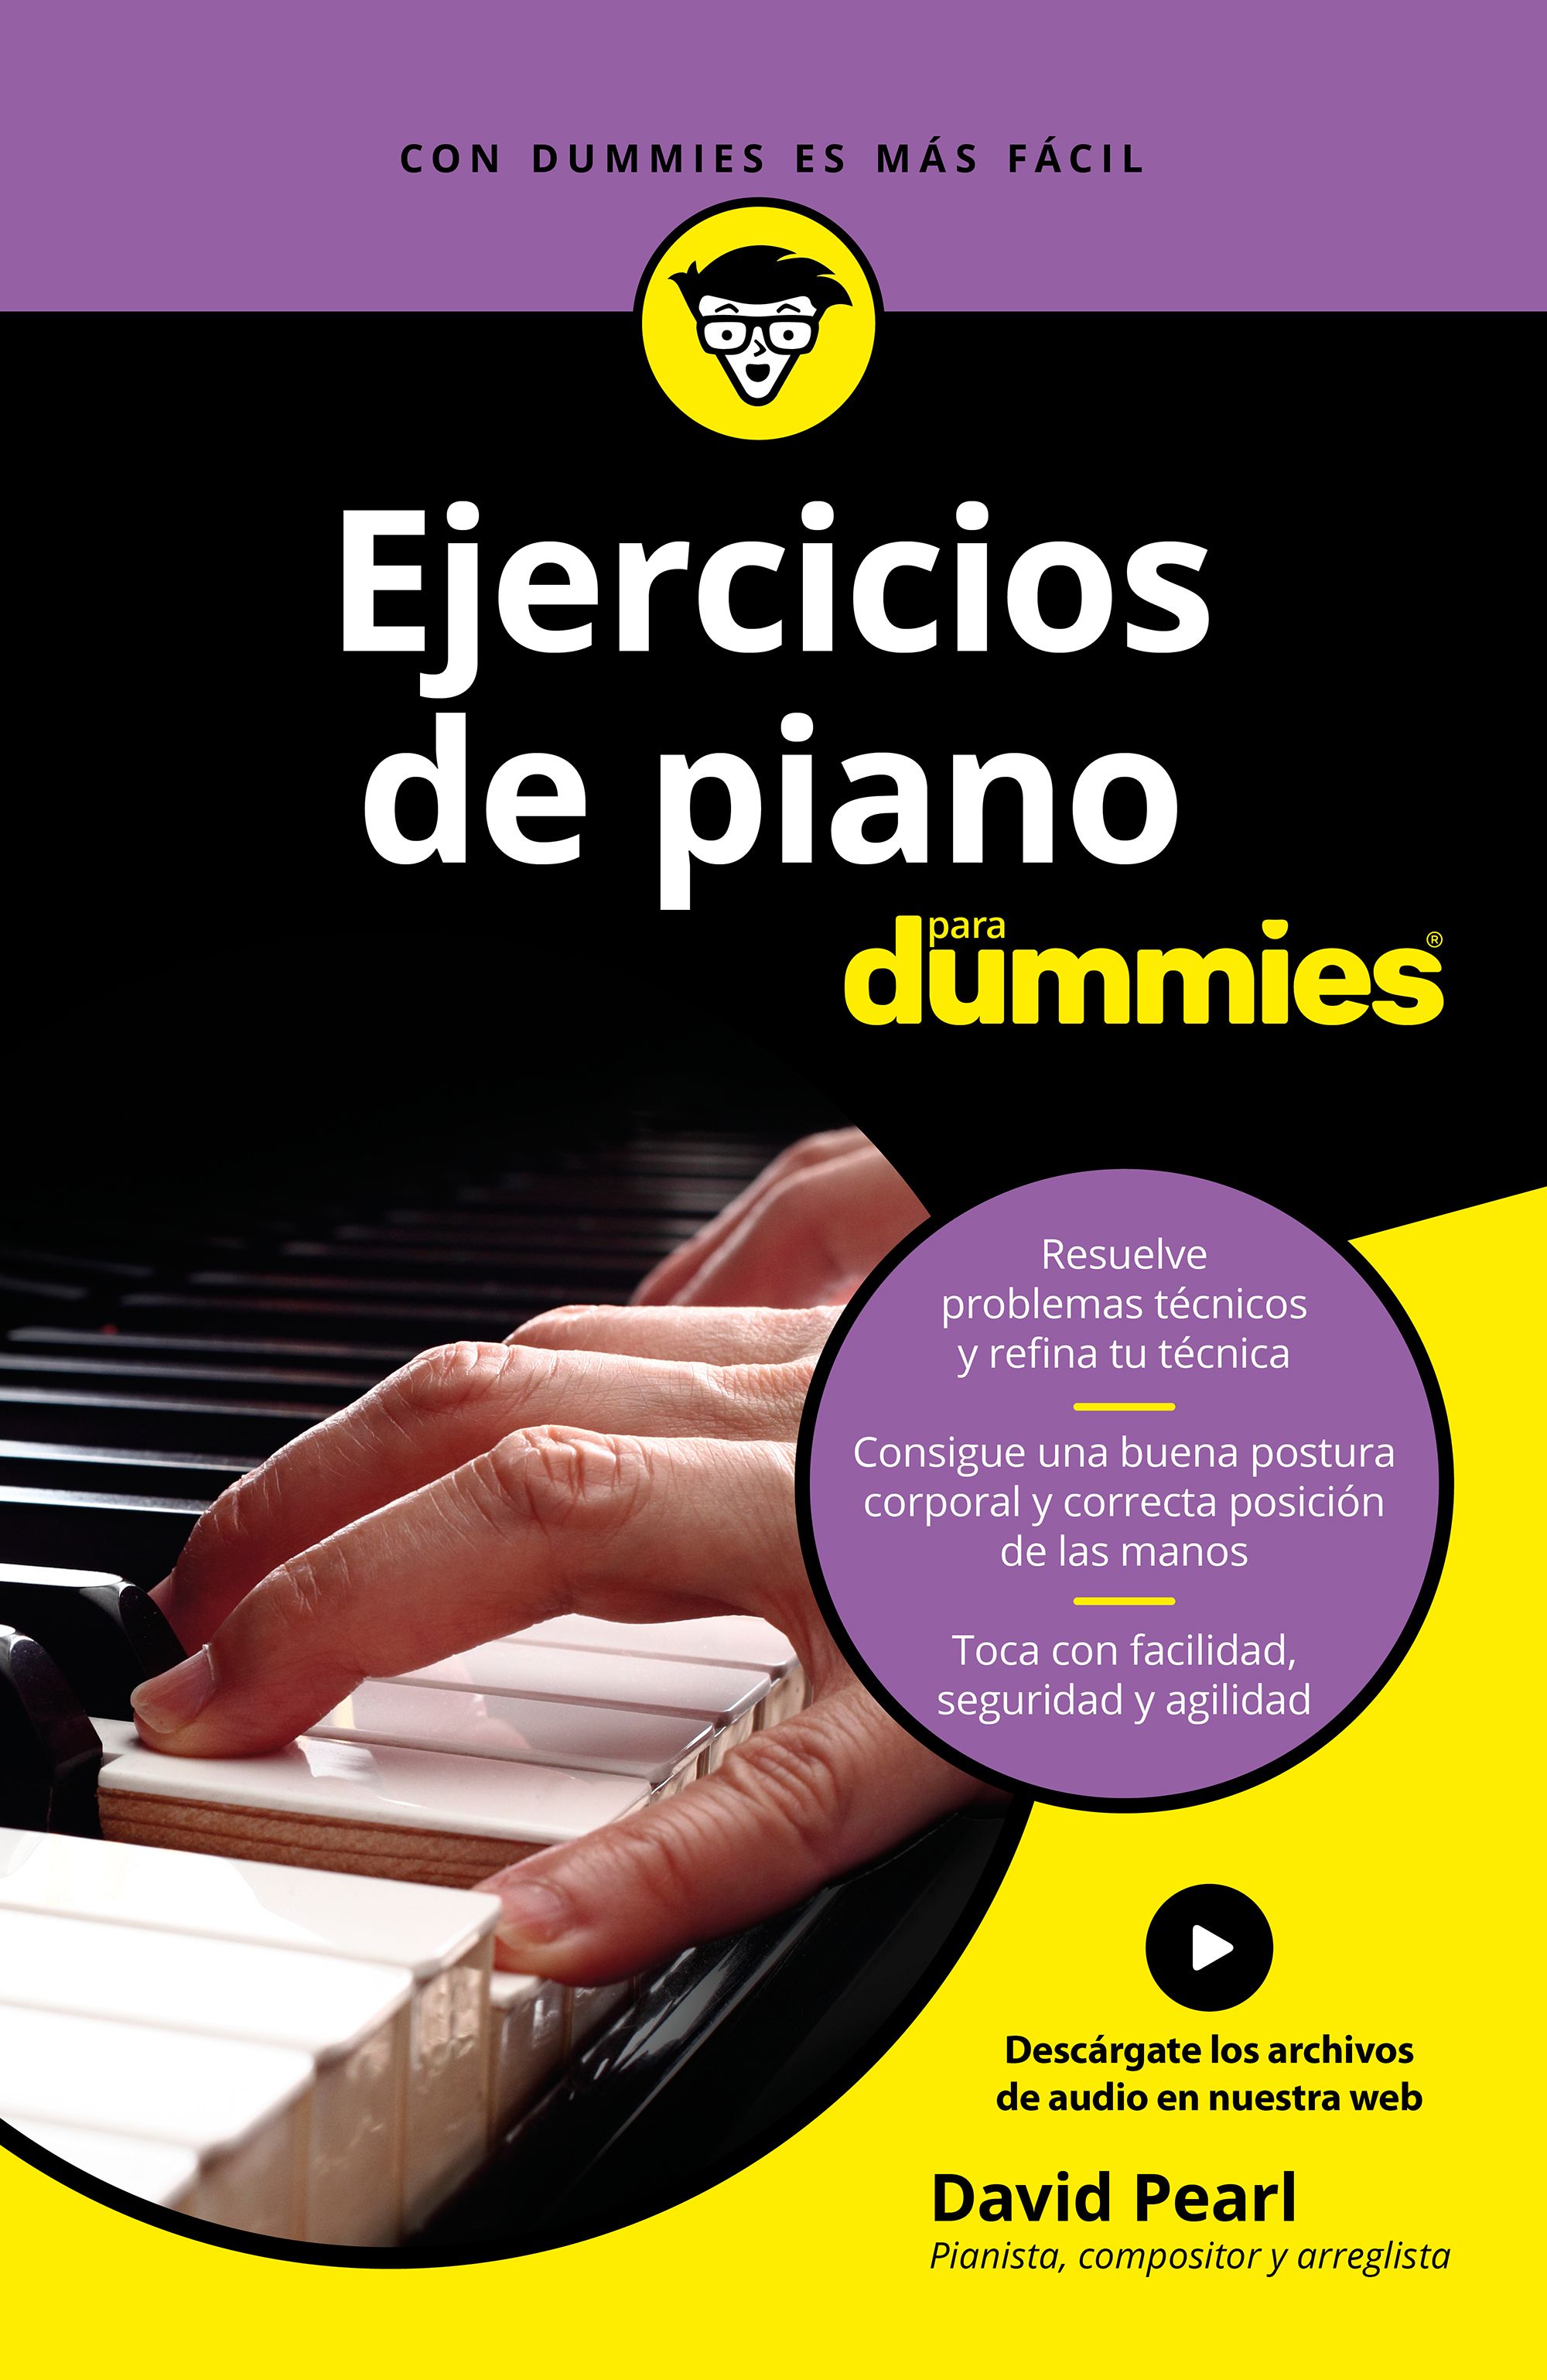 Ejercicios de piano para Dummies :: Libelista